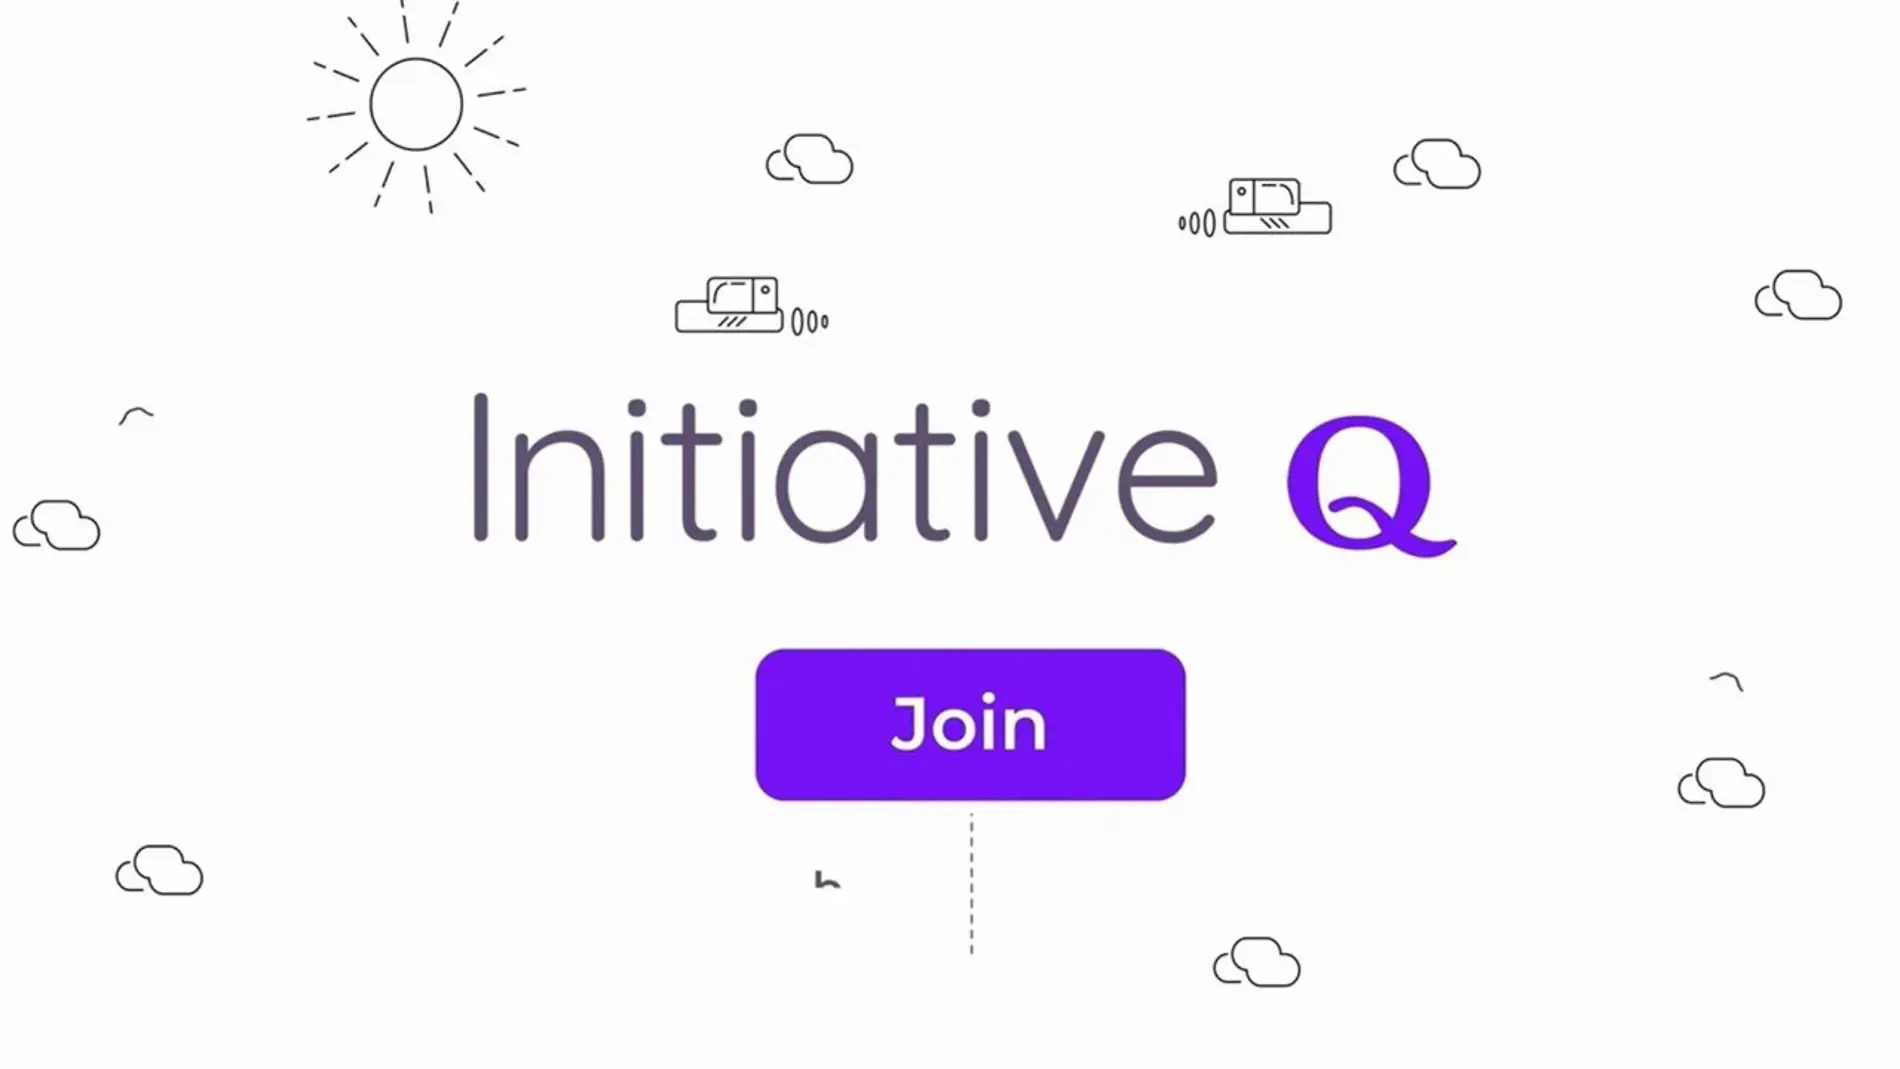 Initiative Q